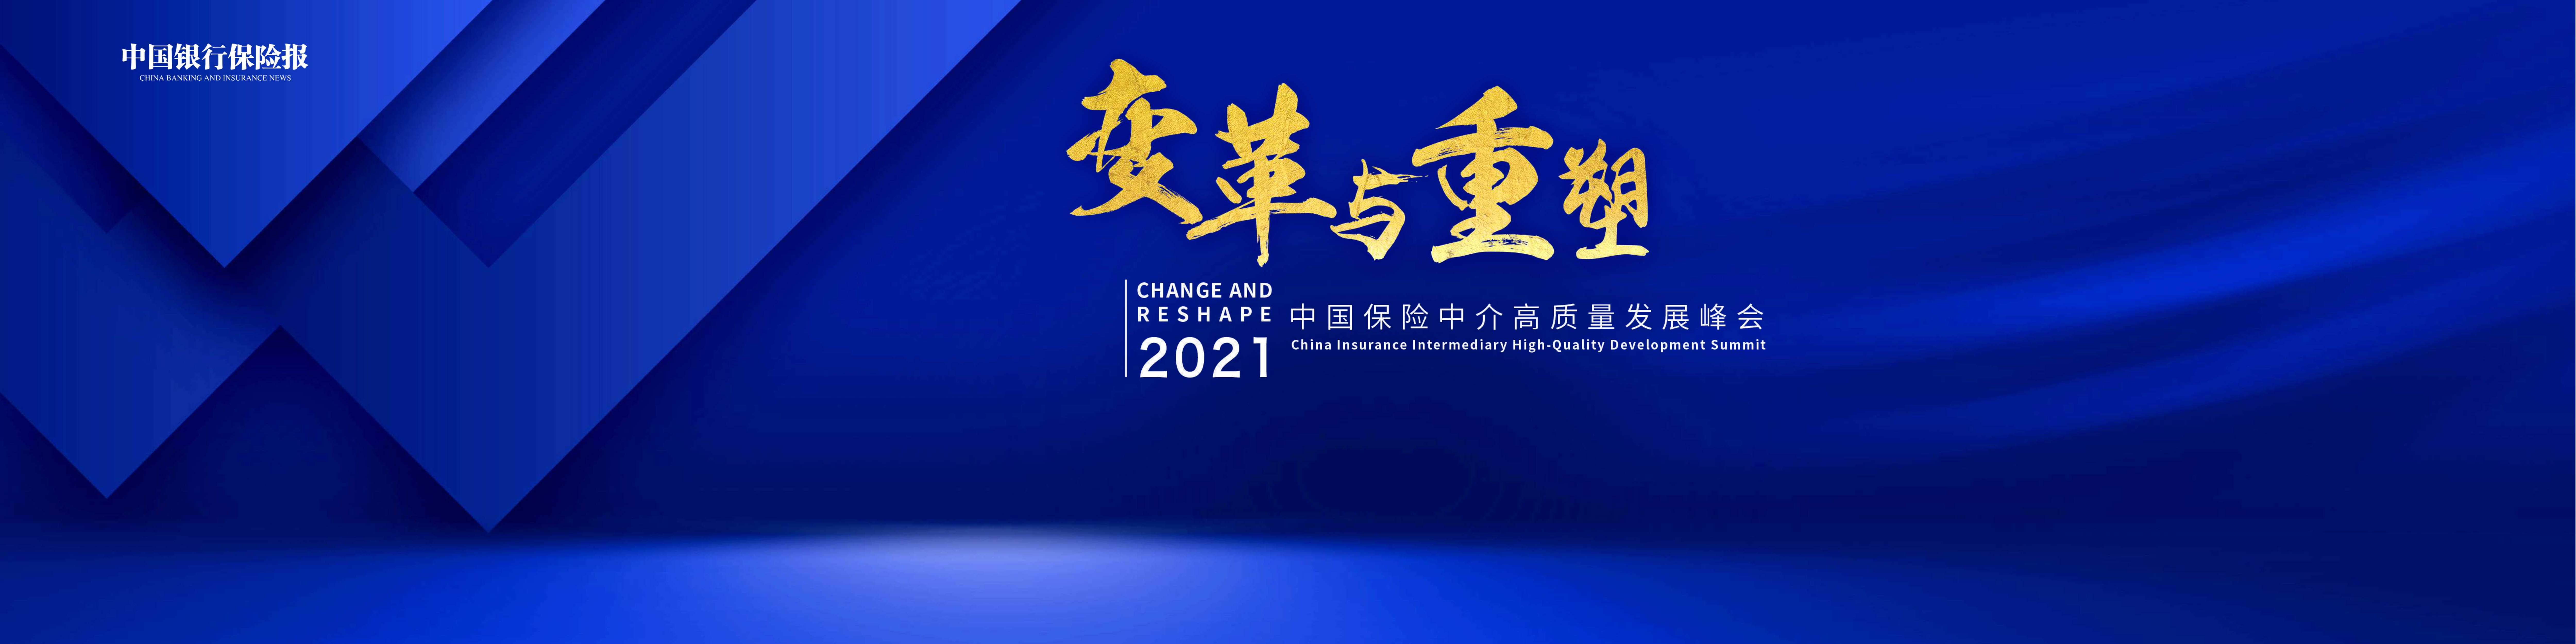 众安科技-中国保险中介高质量发展峰会演讲内容-2022.01-11页